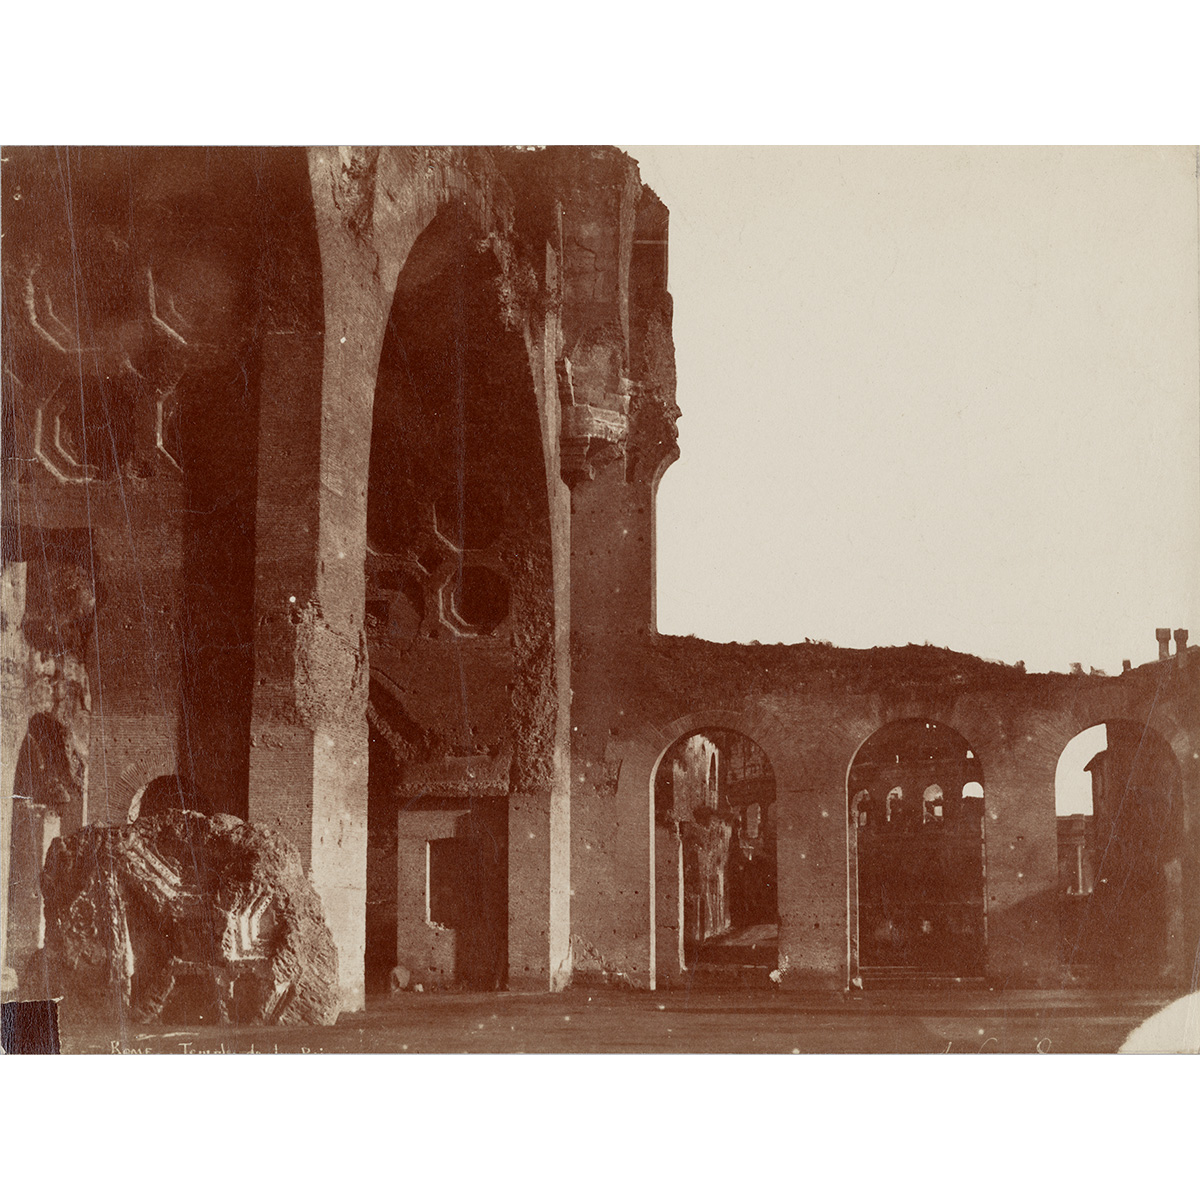 Alfred-Nicolas Normand, Ruines et arcature de la Basilique de Maxence et Constantin, Rome (Italie), 1851 © Ministère de la Culture (France), MPP, diff RMN-GP